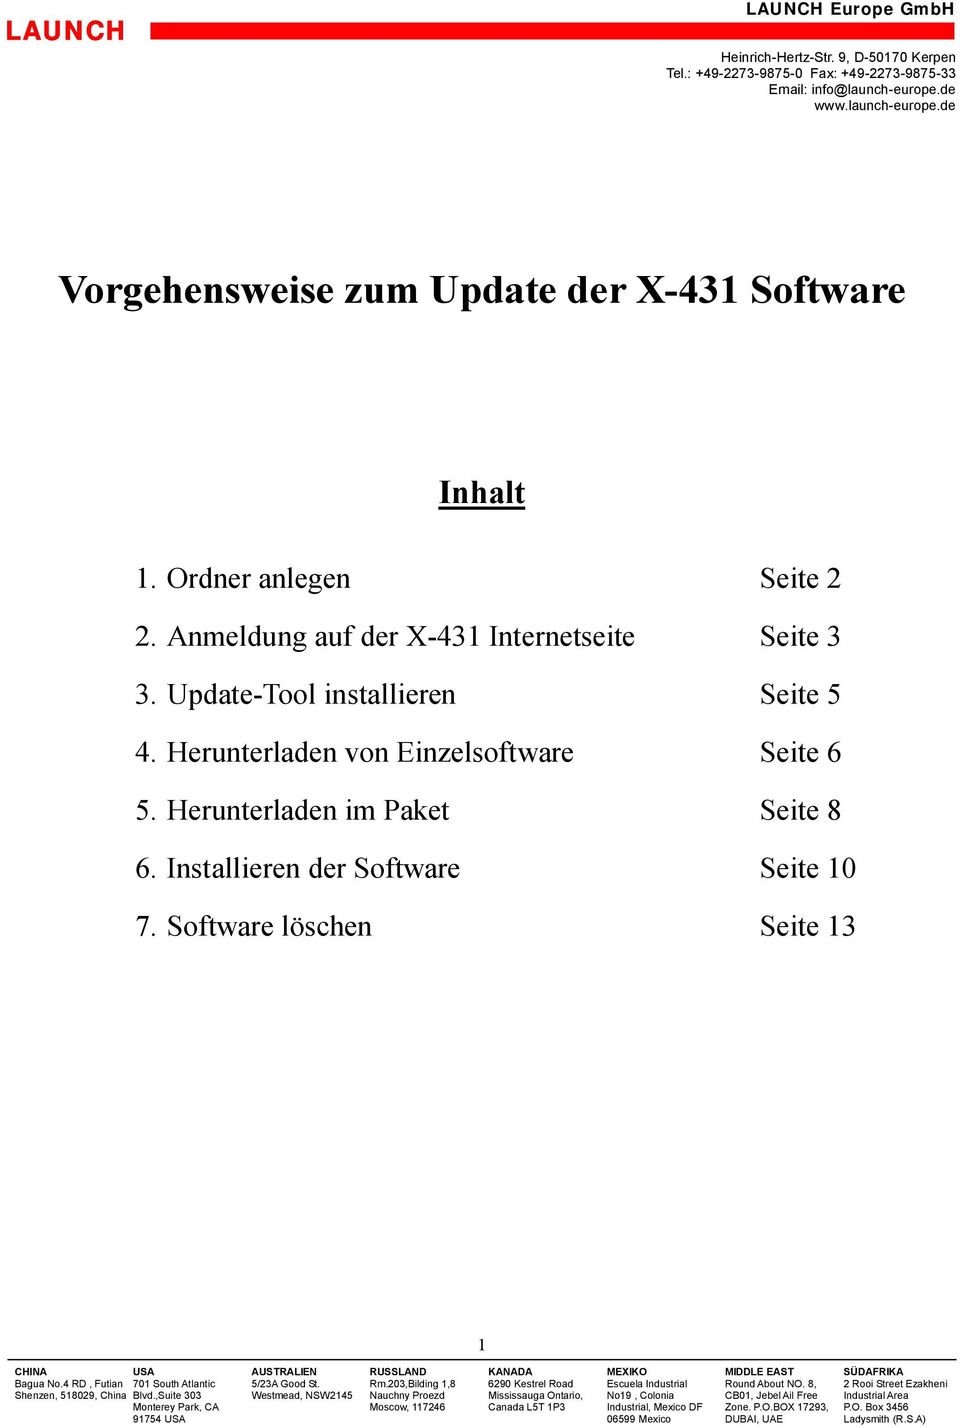 Update-Tool installieren Seite 5 4. Herunterladen von Einzelsoftware Seite 6 5.